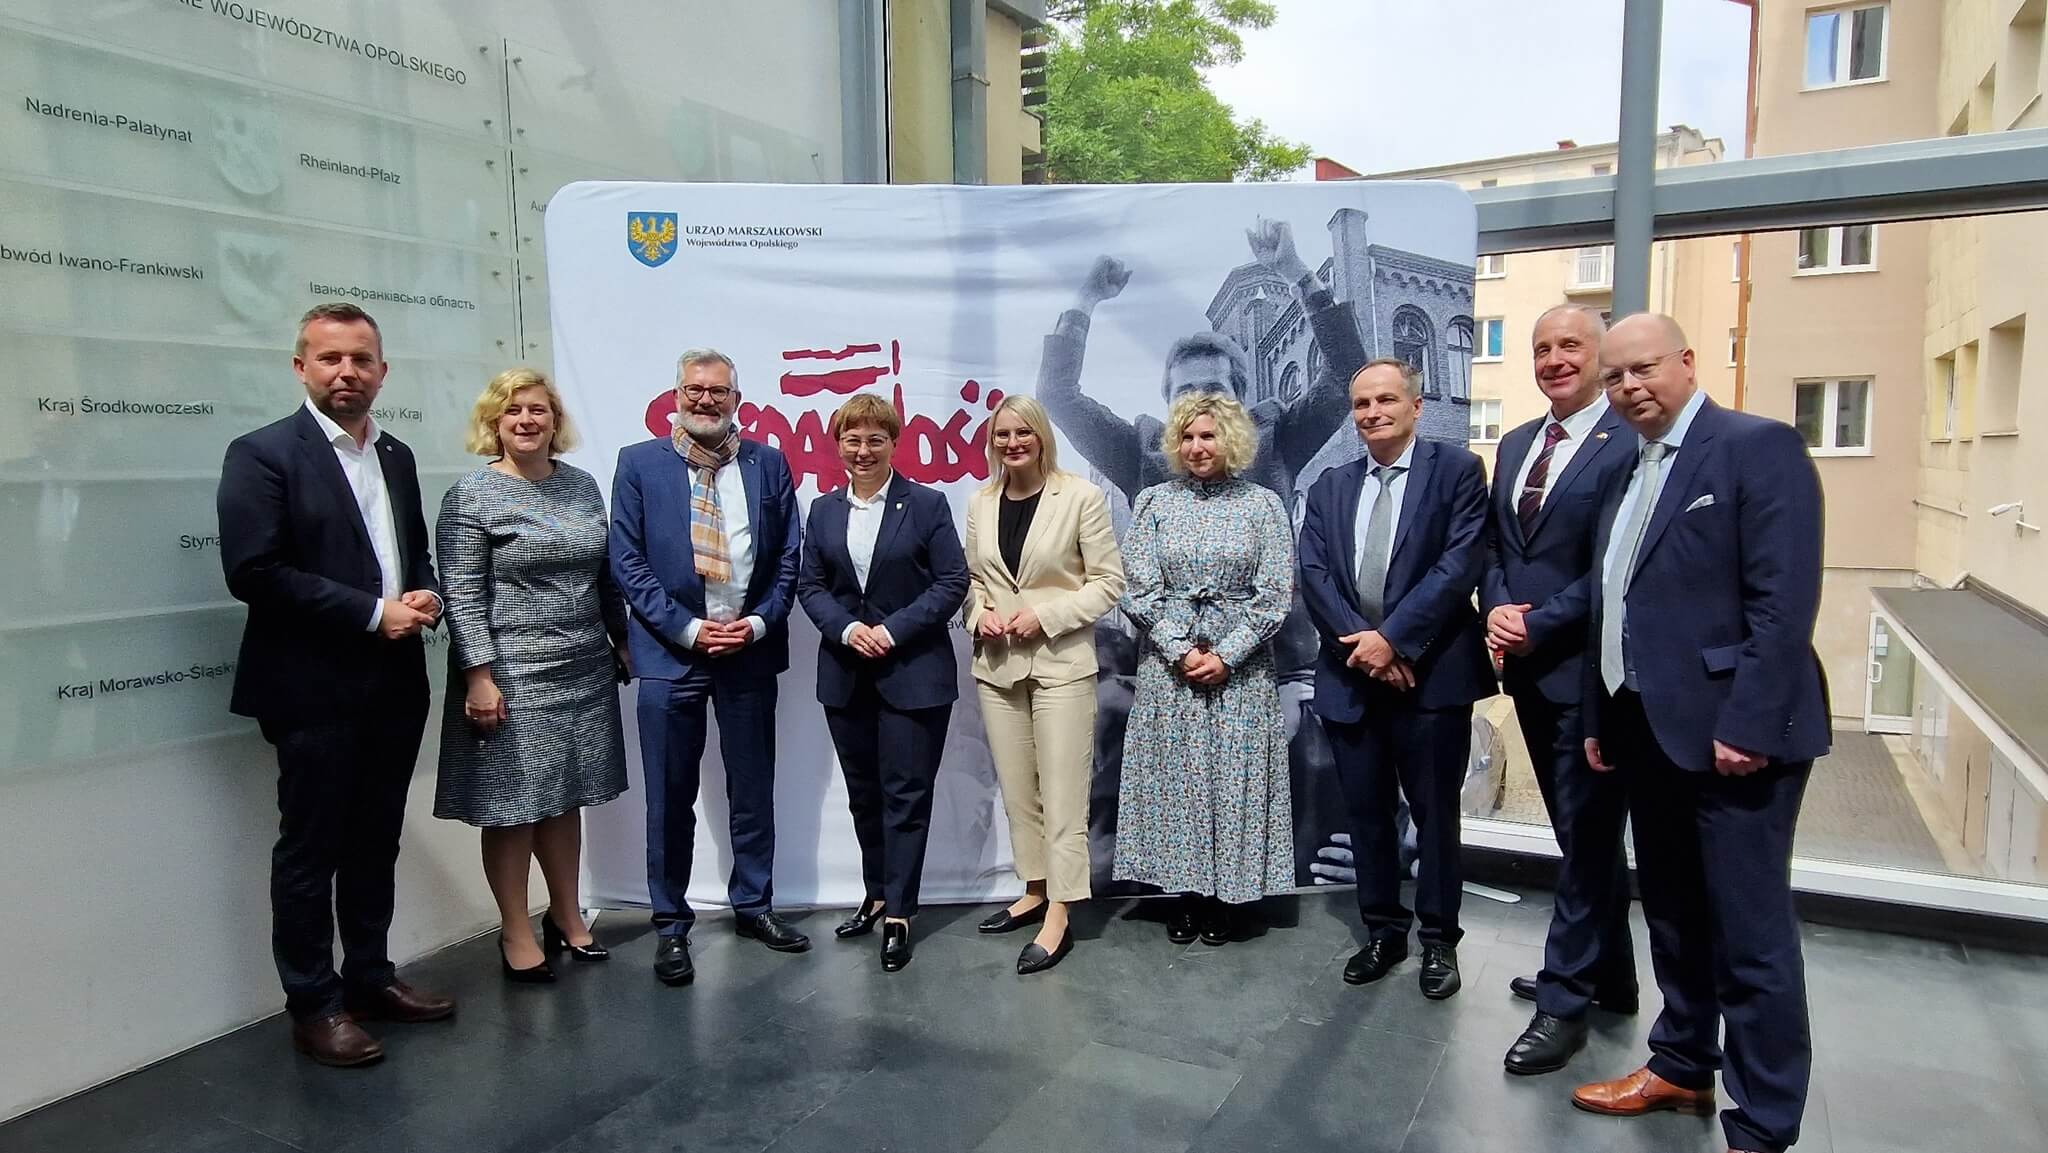 Wizyta delegacyjna niemieckich polityków w zakresie stosunków polsko-niemieckich